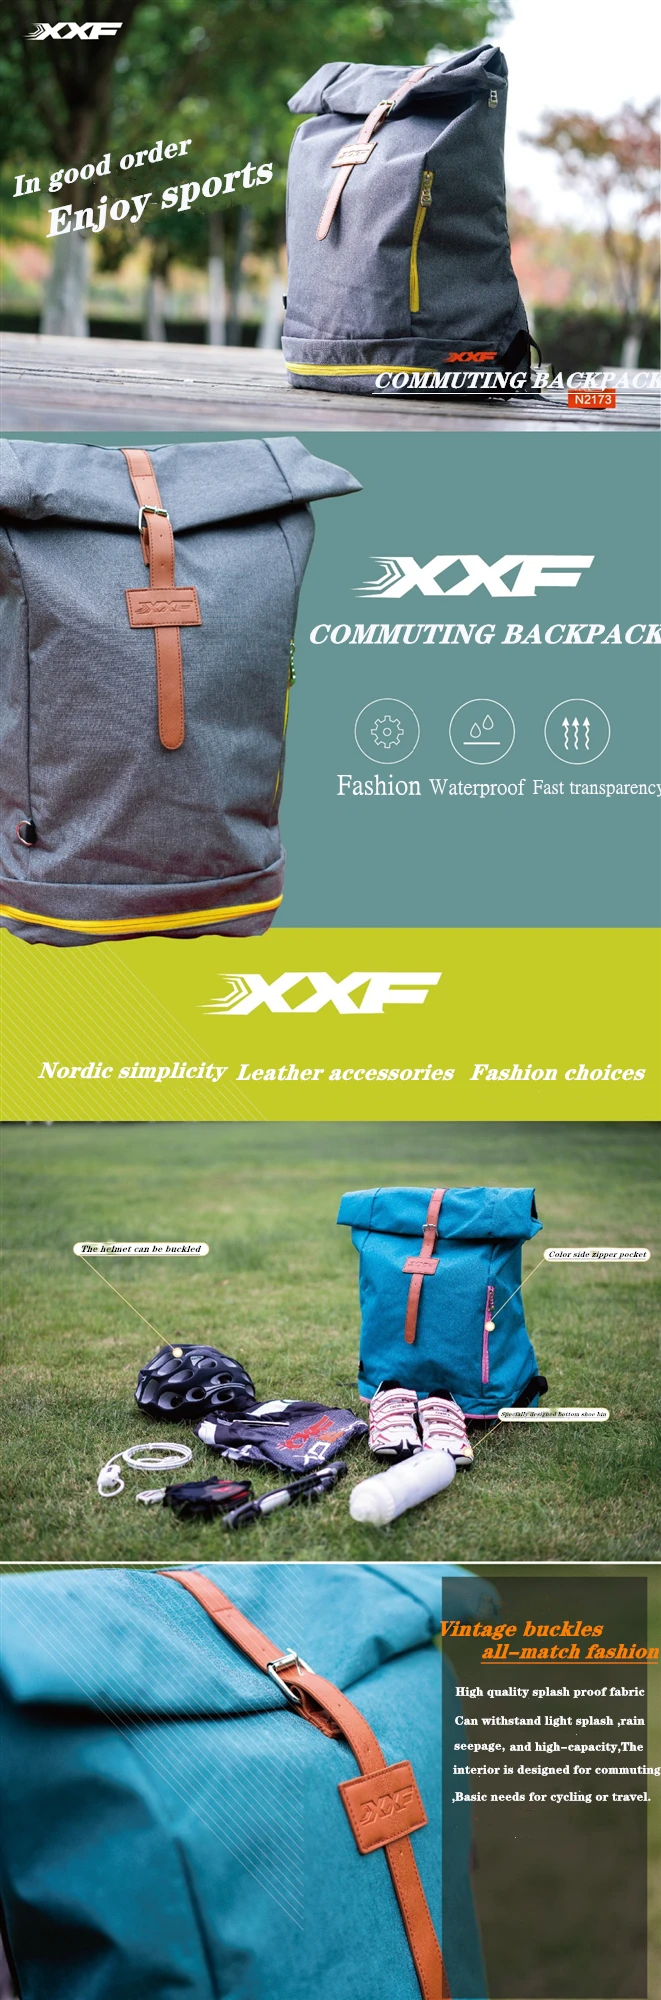 xxf backpack